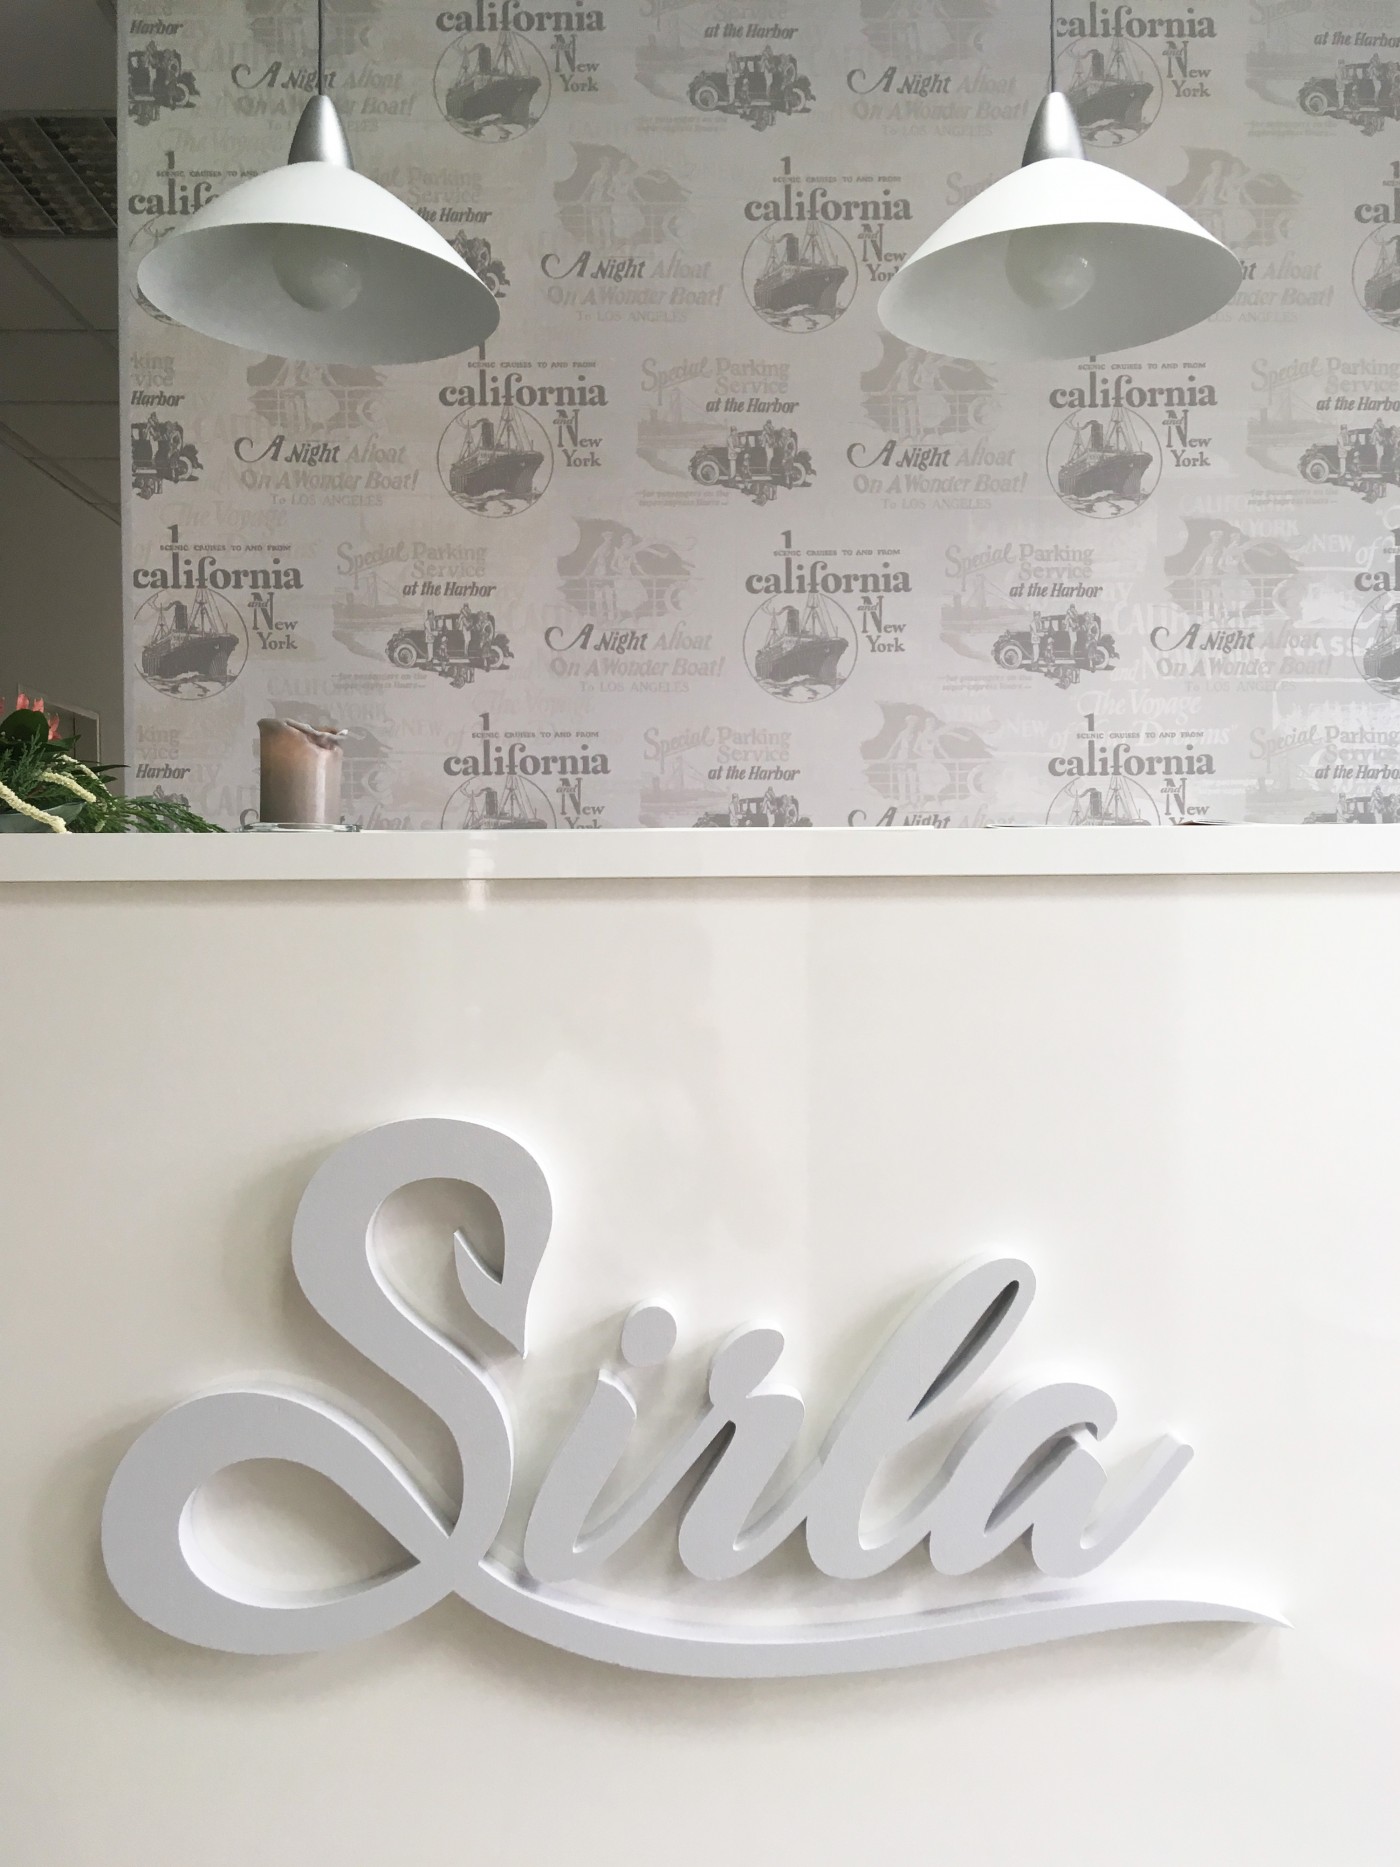 Salon Sirla - návrh a realizace 3D nápisu v interiéru.